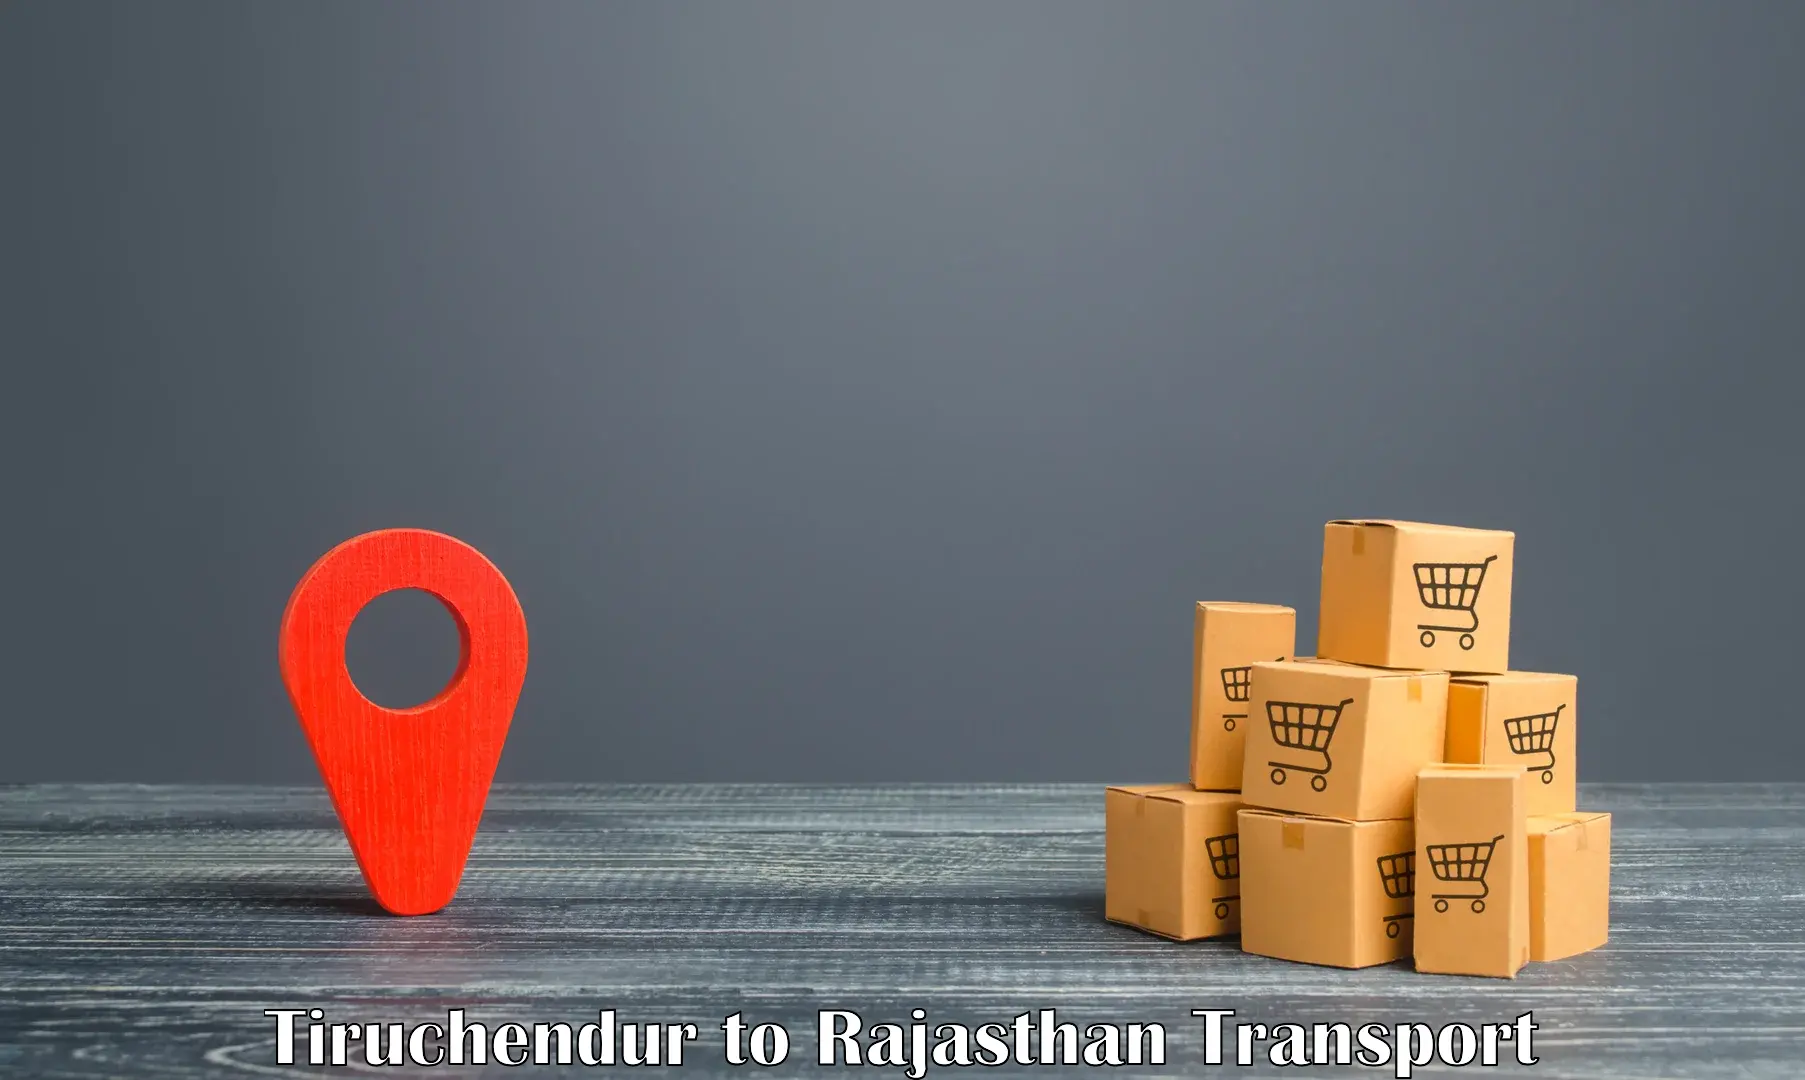 Furniture transport service Tiruchendur to Keshoraipatan